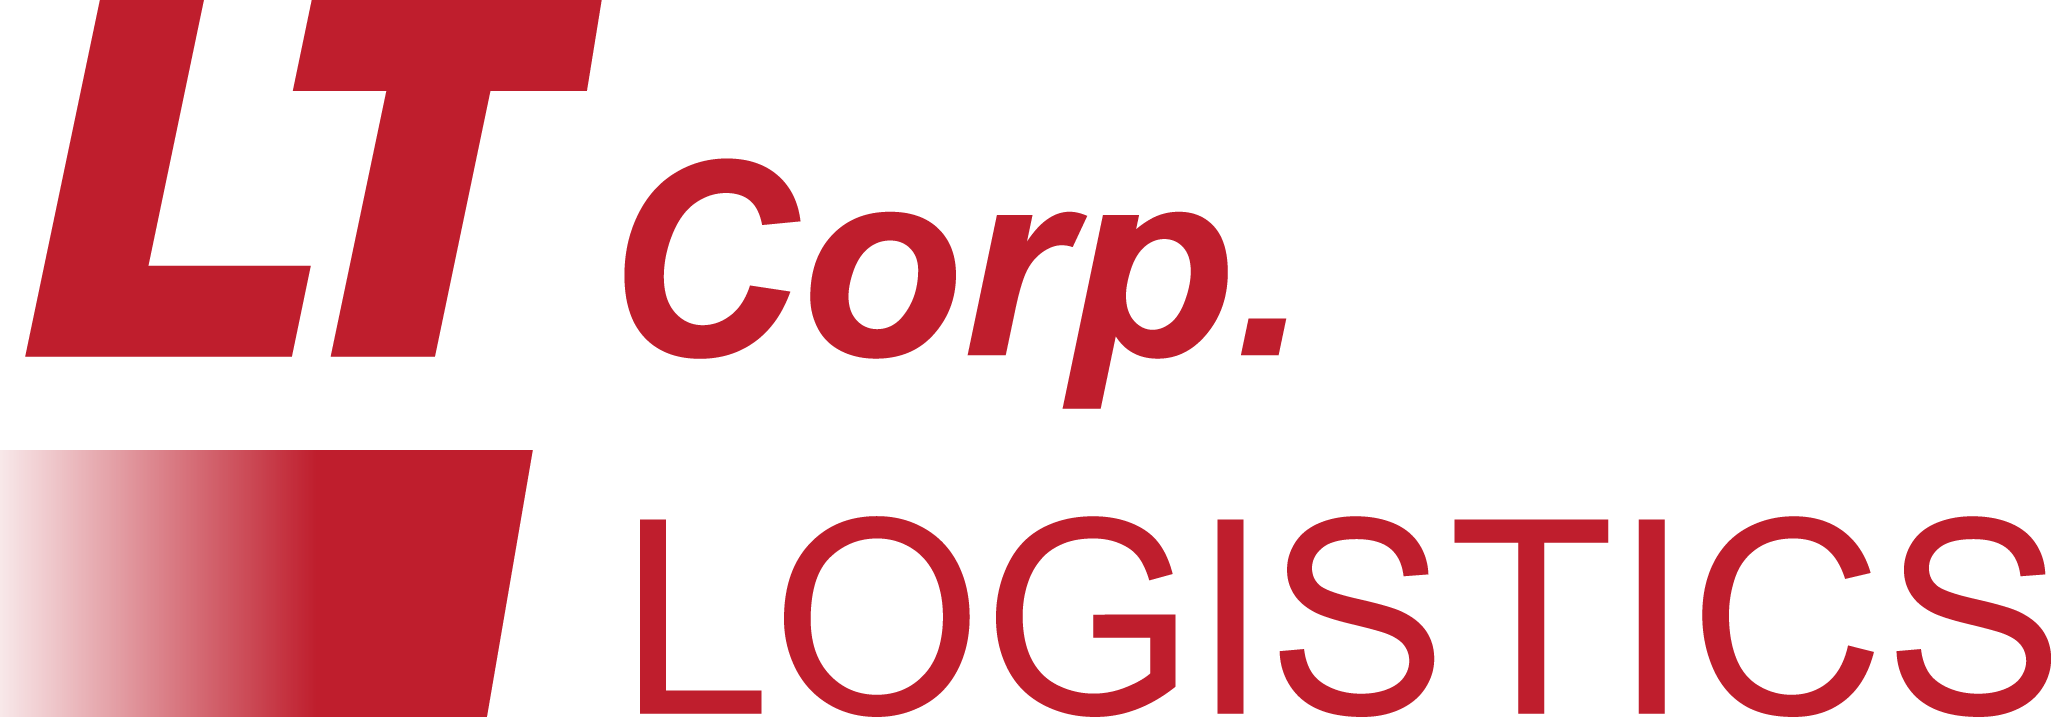 Lt Corp. Logistics Logo